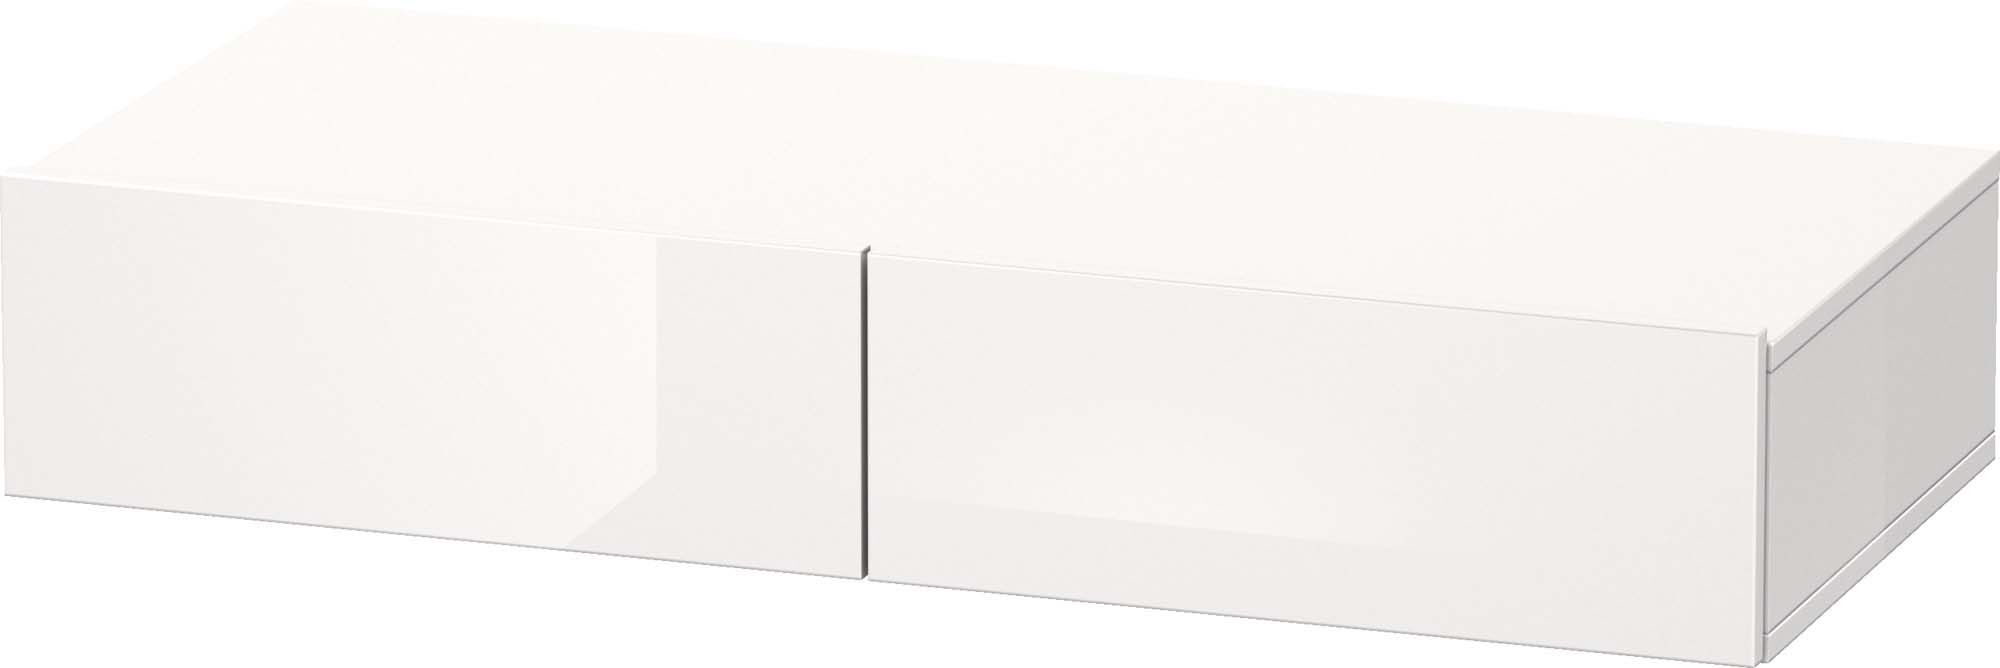 Duravit DuraStyle Schubkastenablage DS827002218 100 x 44 cm, 2 Schubkästen, weiß hochglanz/weiß matt, mit Konsolenträger